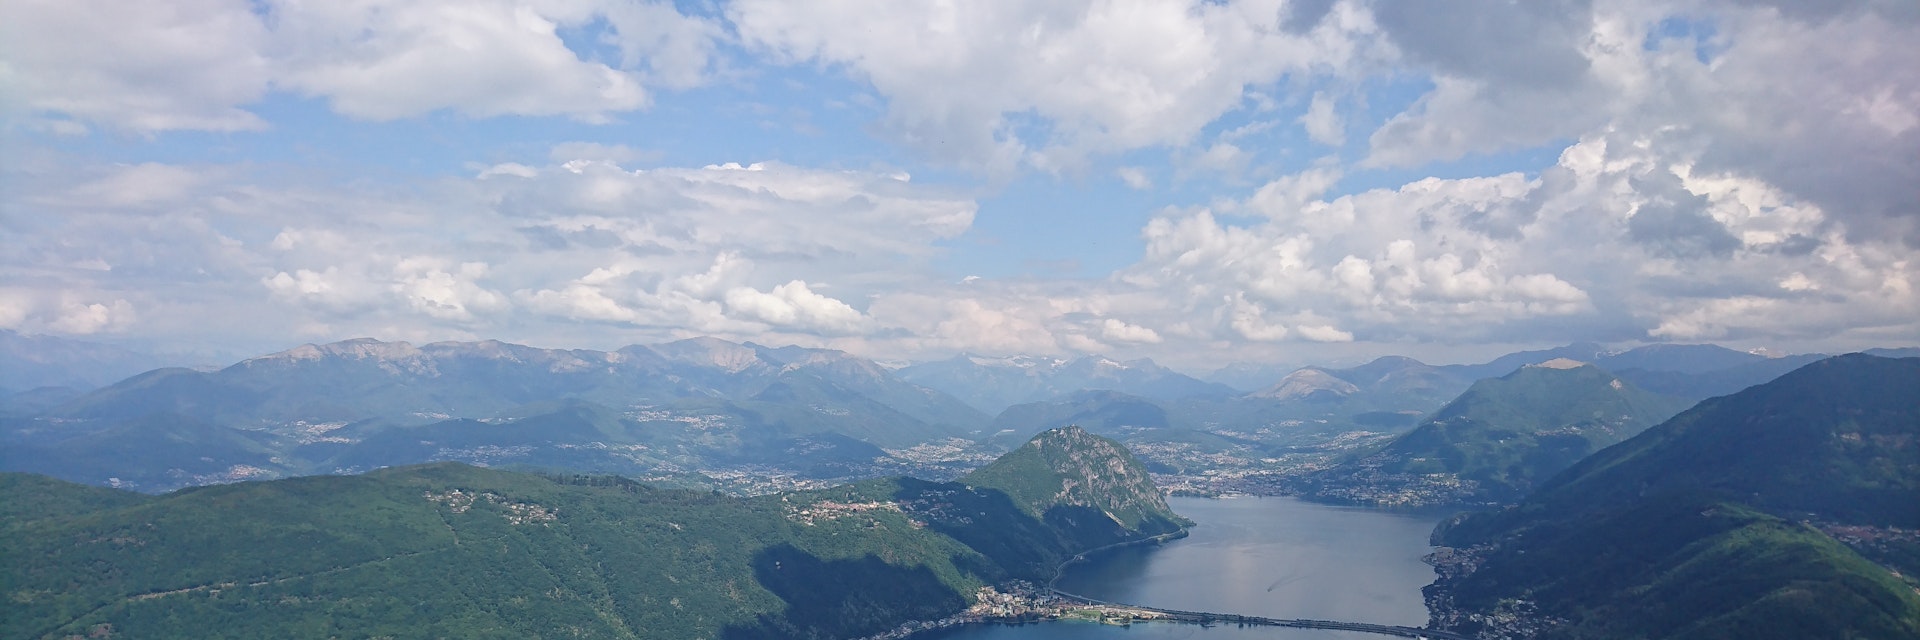 View of Lago di Lugano and the city of Lugano from Monte San Giorgio summit.